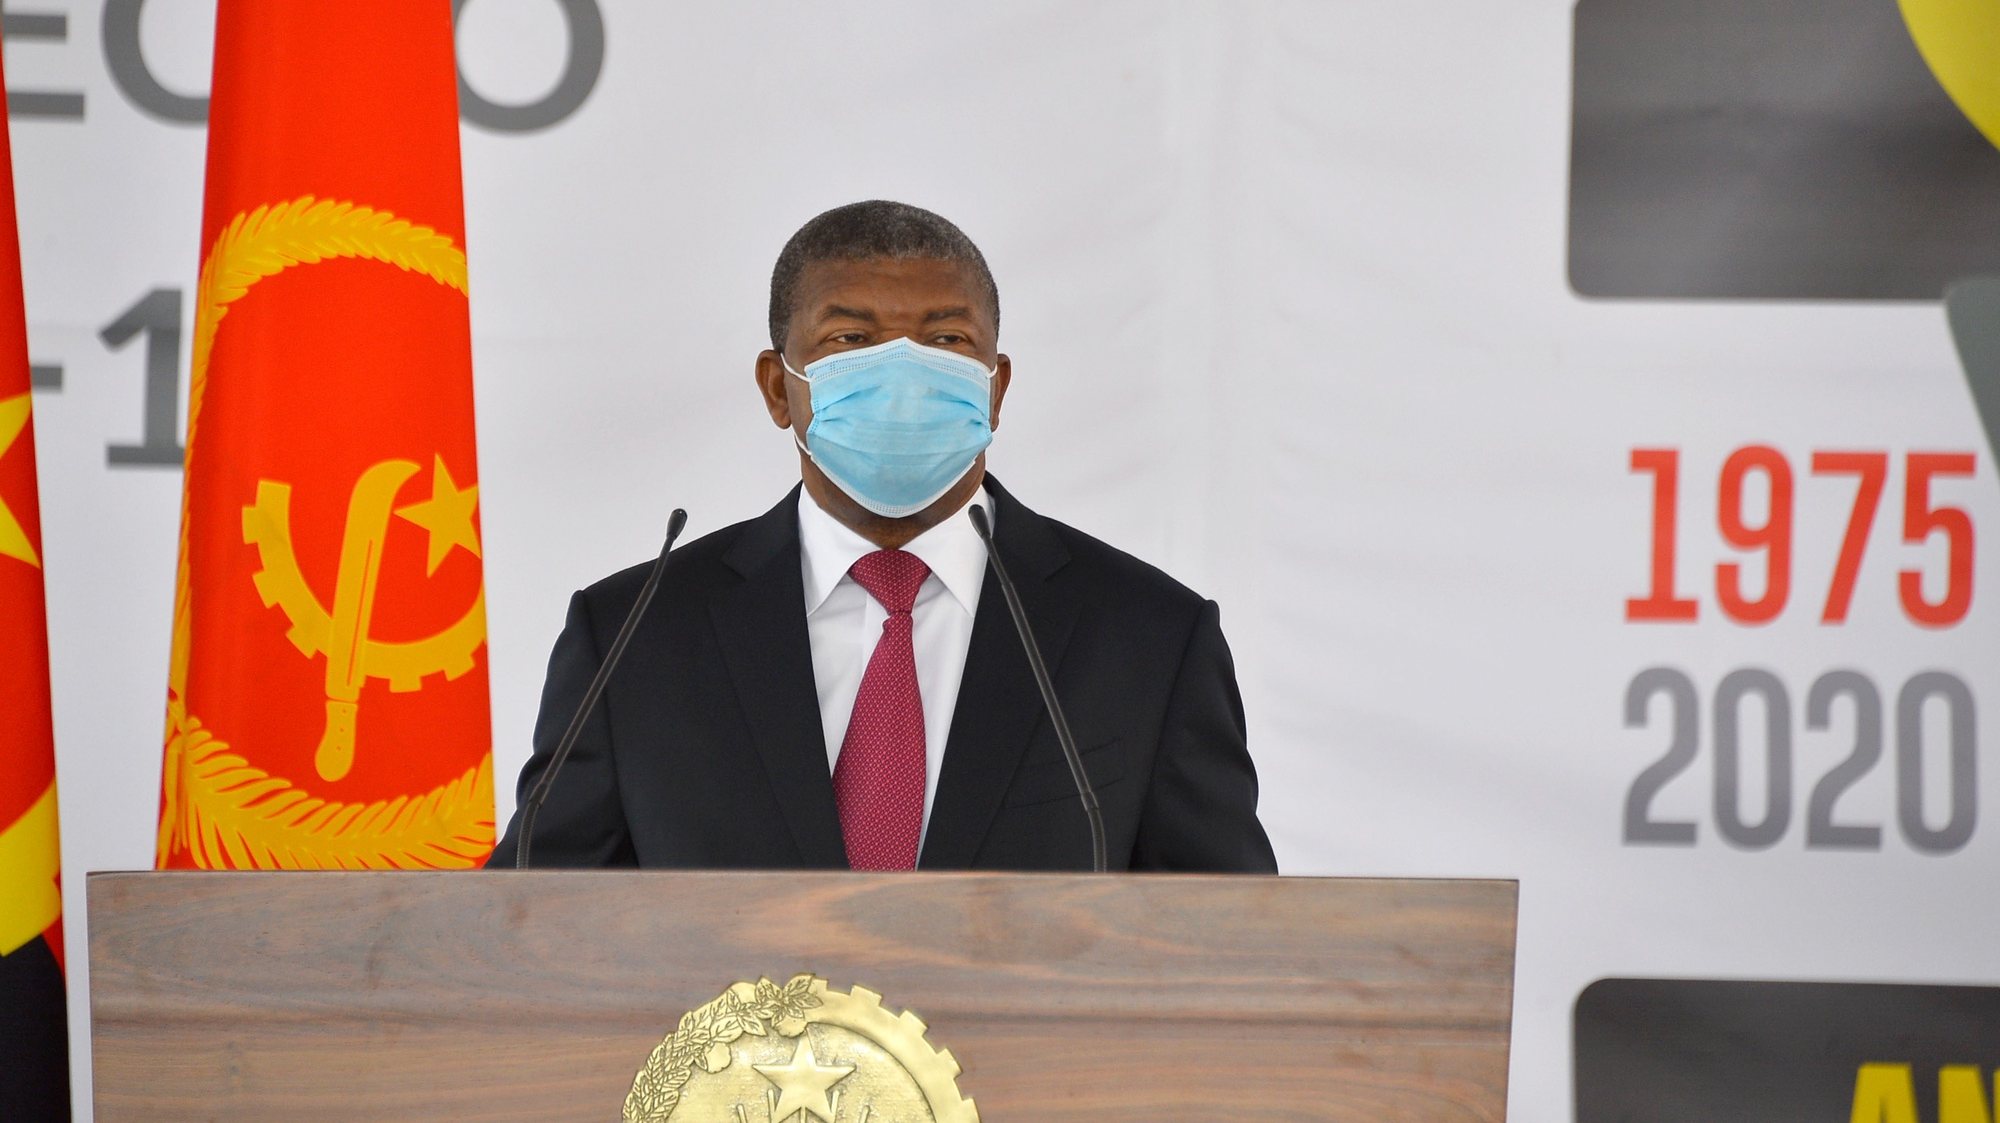 O Presidente de Angola, João Lourenço, durante uma cerimónia que serviu para homenagear as categorias profissionais que se têm destacado na luta contra a pandemia da covid-19, Luanda, Angola, 10 de novembro de 2020.  LUSA